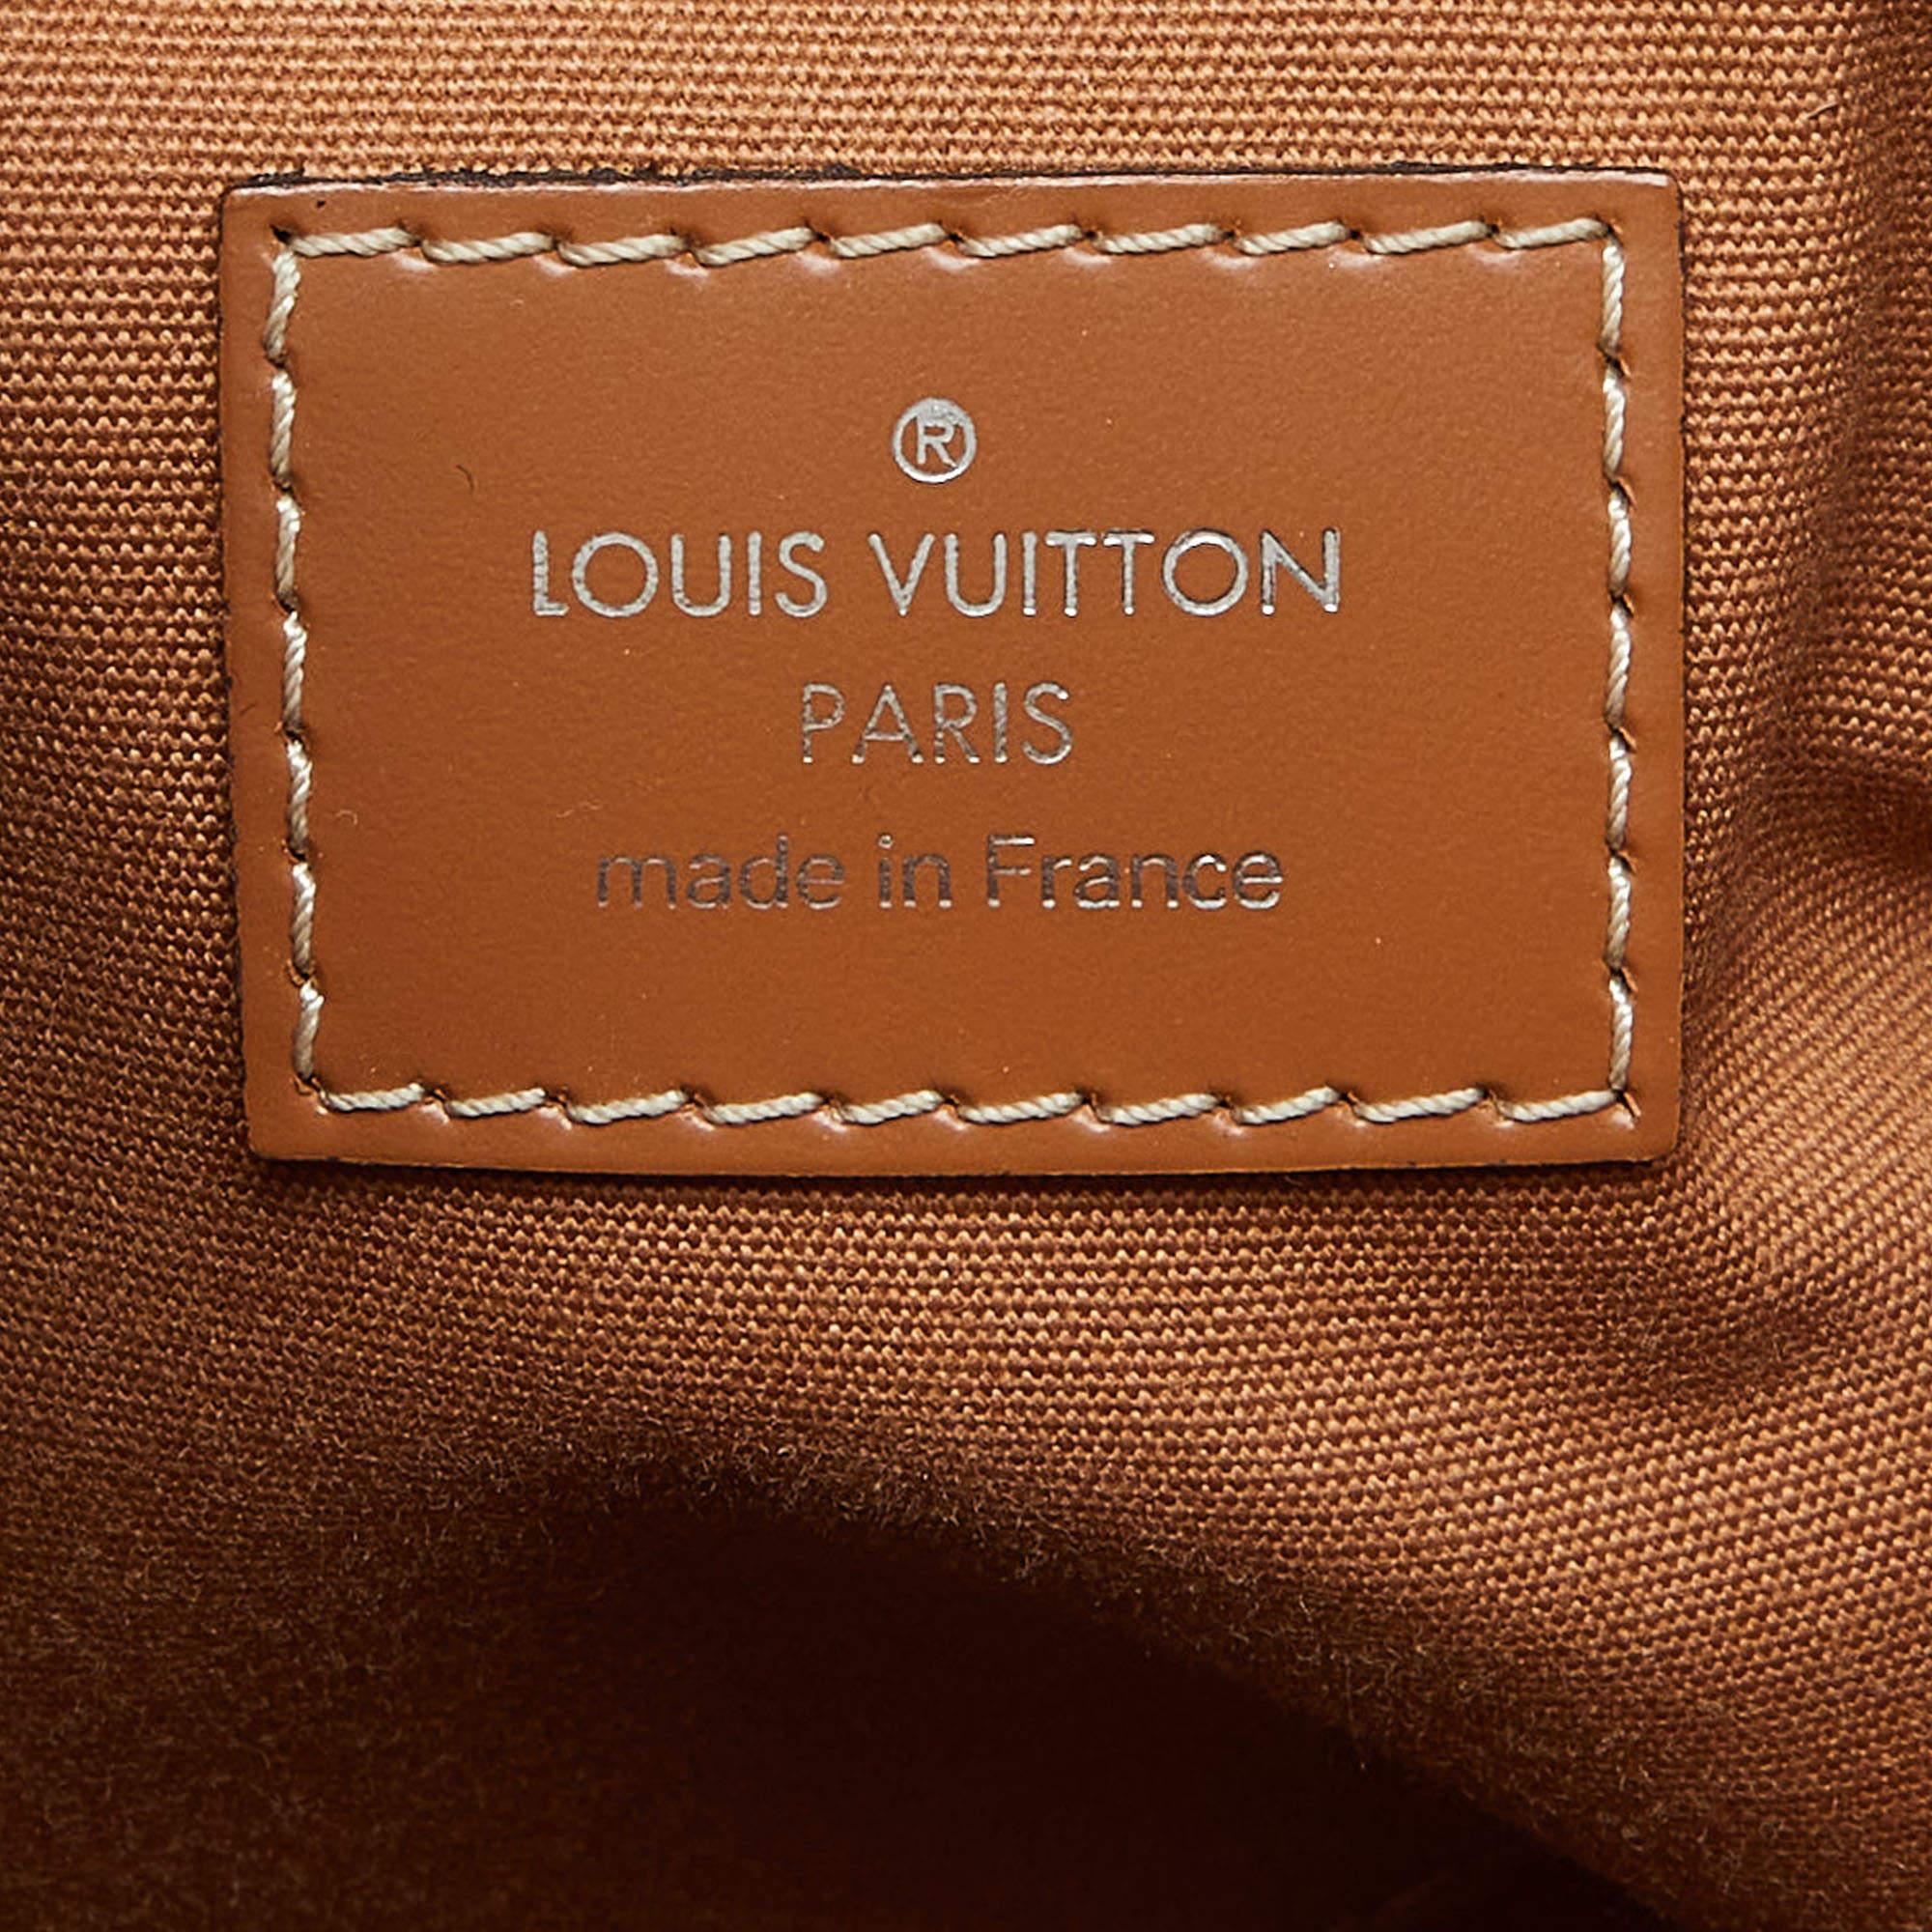 Louis Vuitton Cannelle Epi Leather Passy PM Bag 3